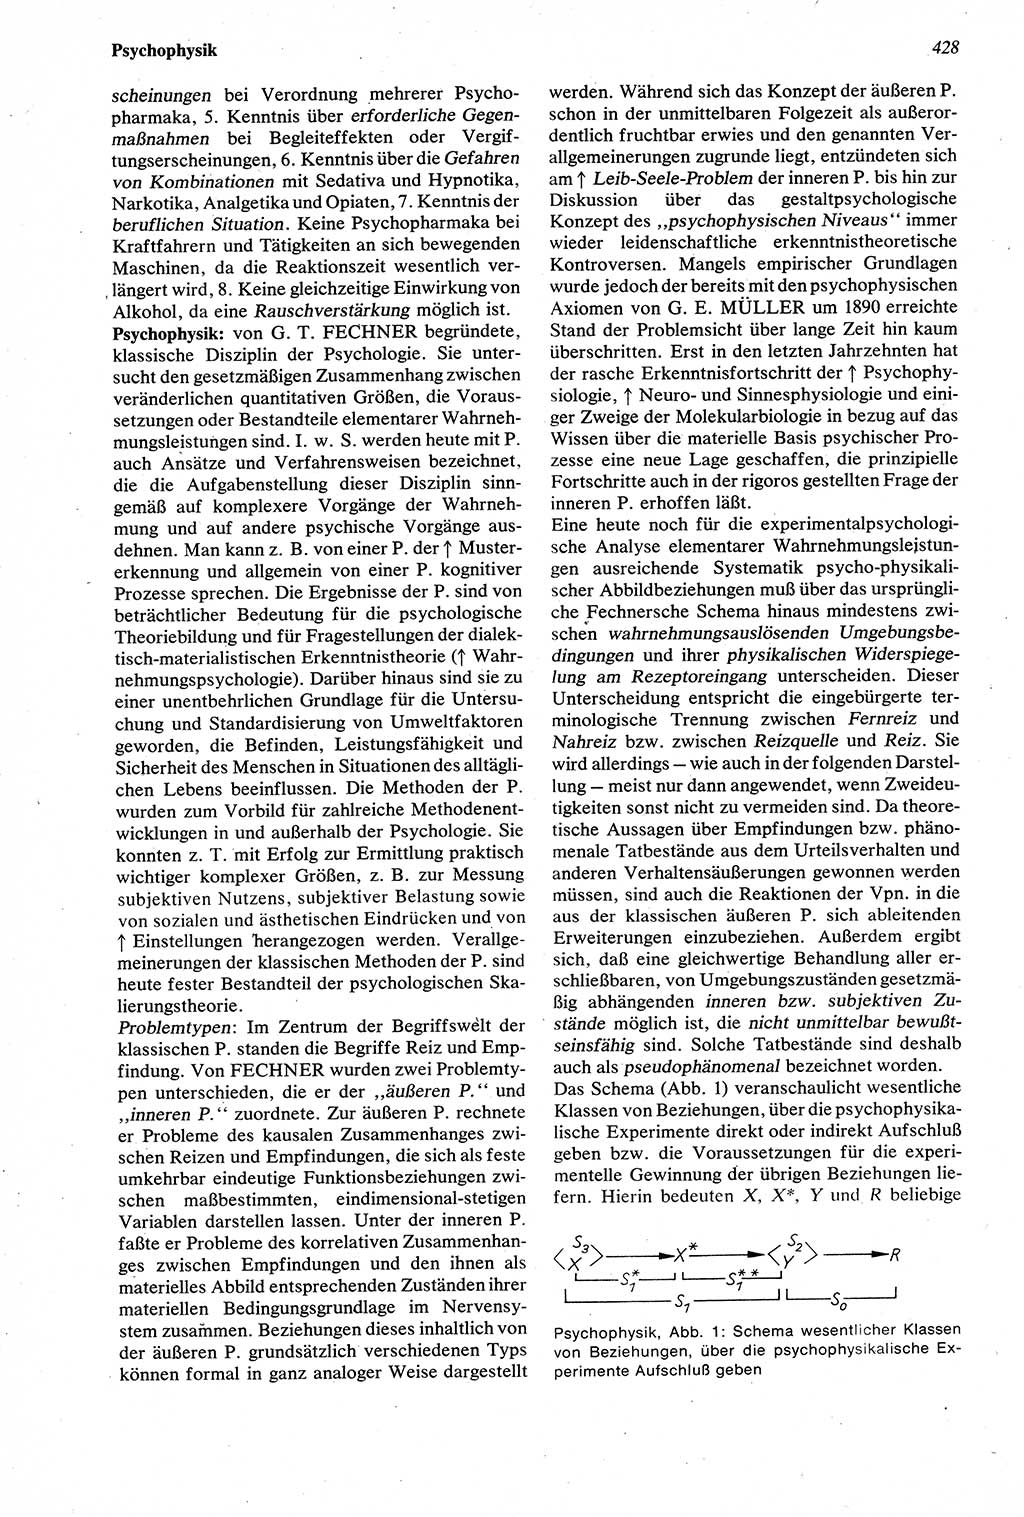 Wörterbuch der Psychologie [Deutsche Demokratische Republik (DDR)] 1976, Seite 428 (Wb. Psych. DDR 1976, S. 428)